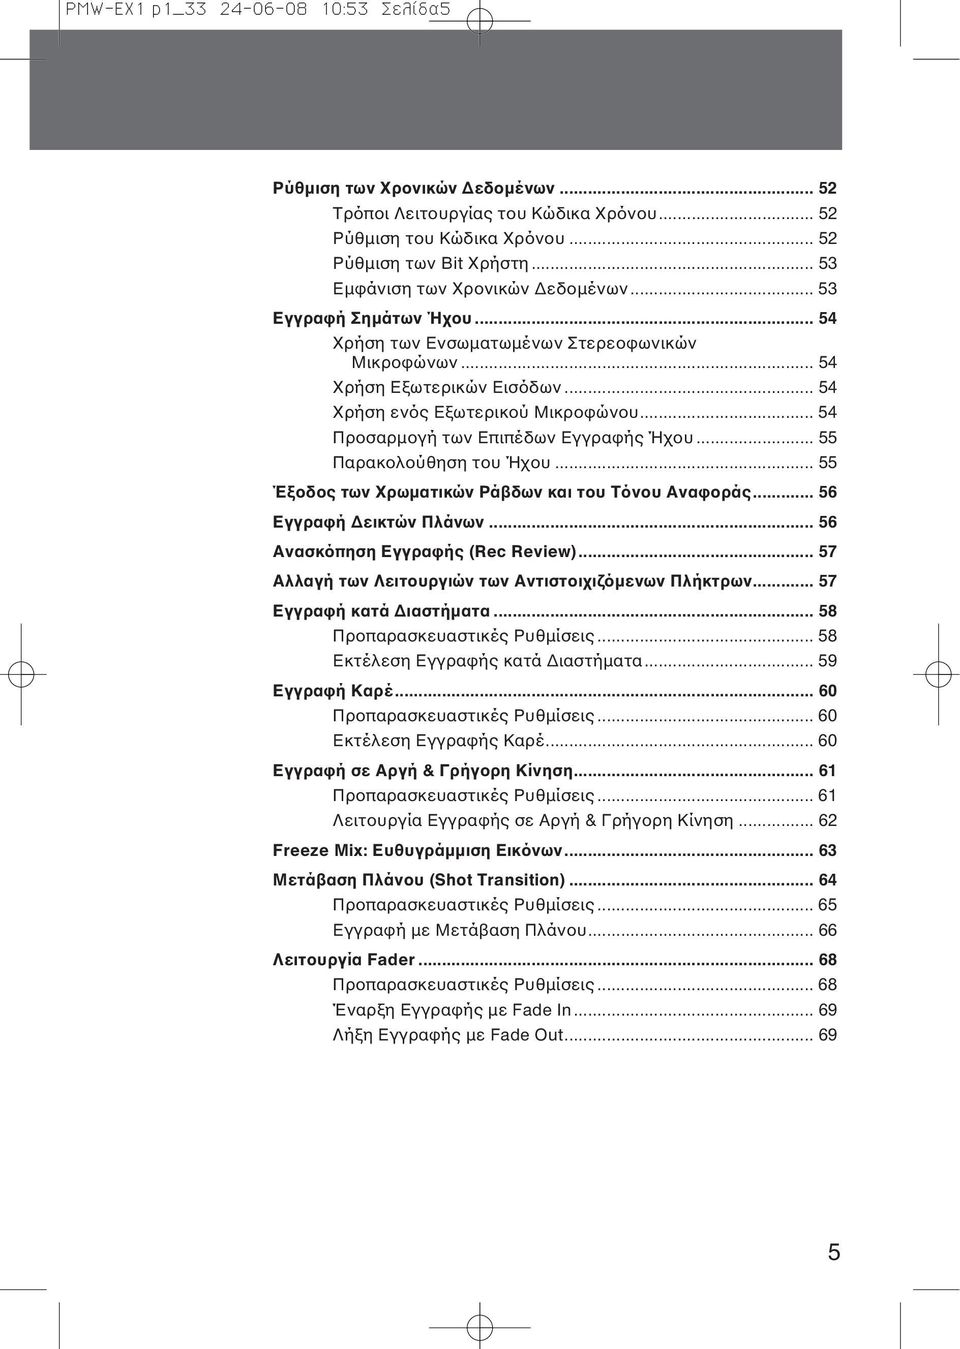 .. 54 Προσαρμογή των Επιπέδων Εγγραφής Ήχου... 55 Παρακολούθηση του Ήχου... 55 Έξοδος των Χρωματικών Ράβδων και του Τόνου Αναφοράς... 56 Εγγραφή Δεικτών Πλάνων... 56 Ανασκόπηση Εγγραφής (Rec Review).